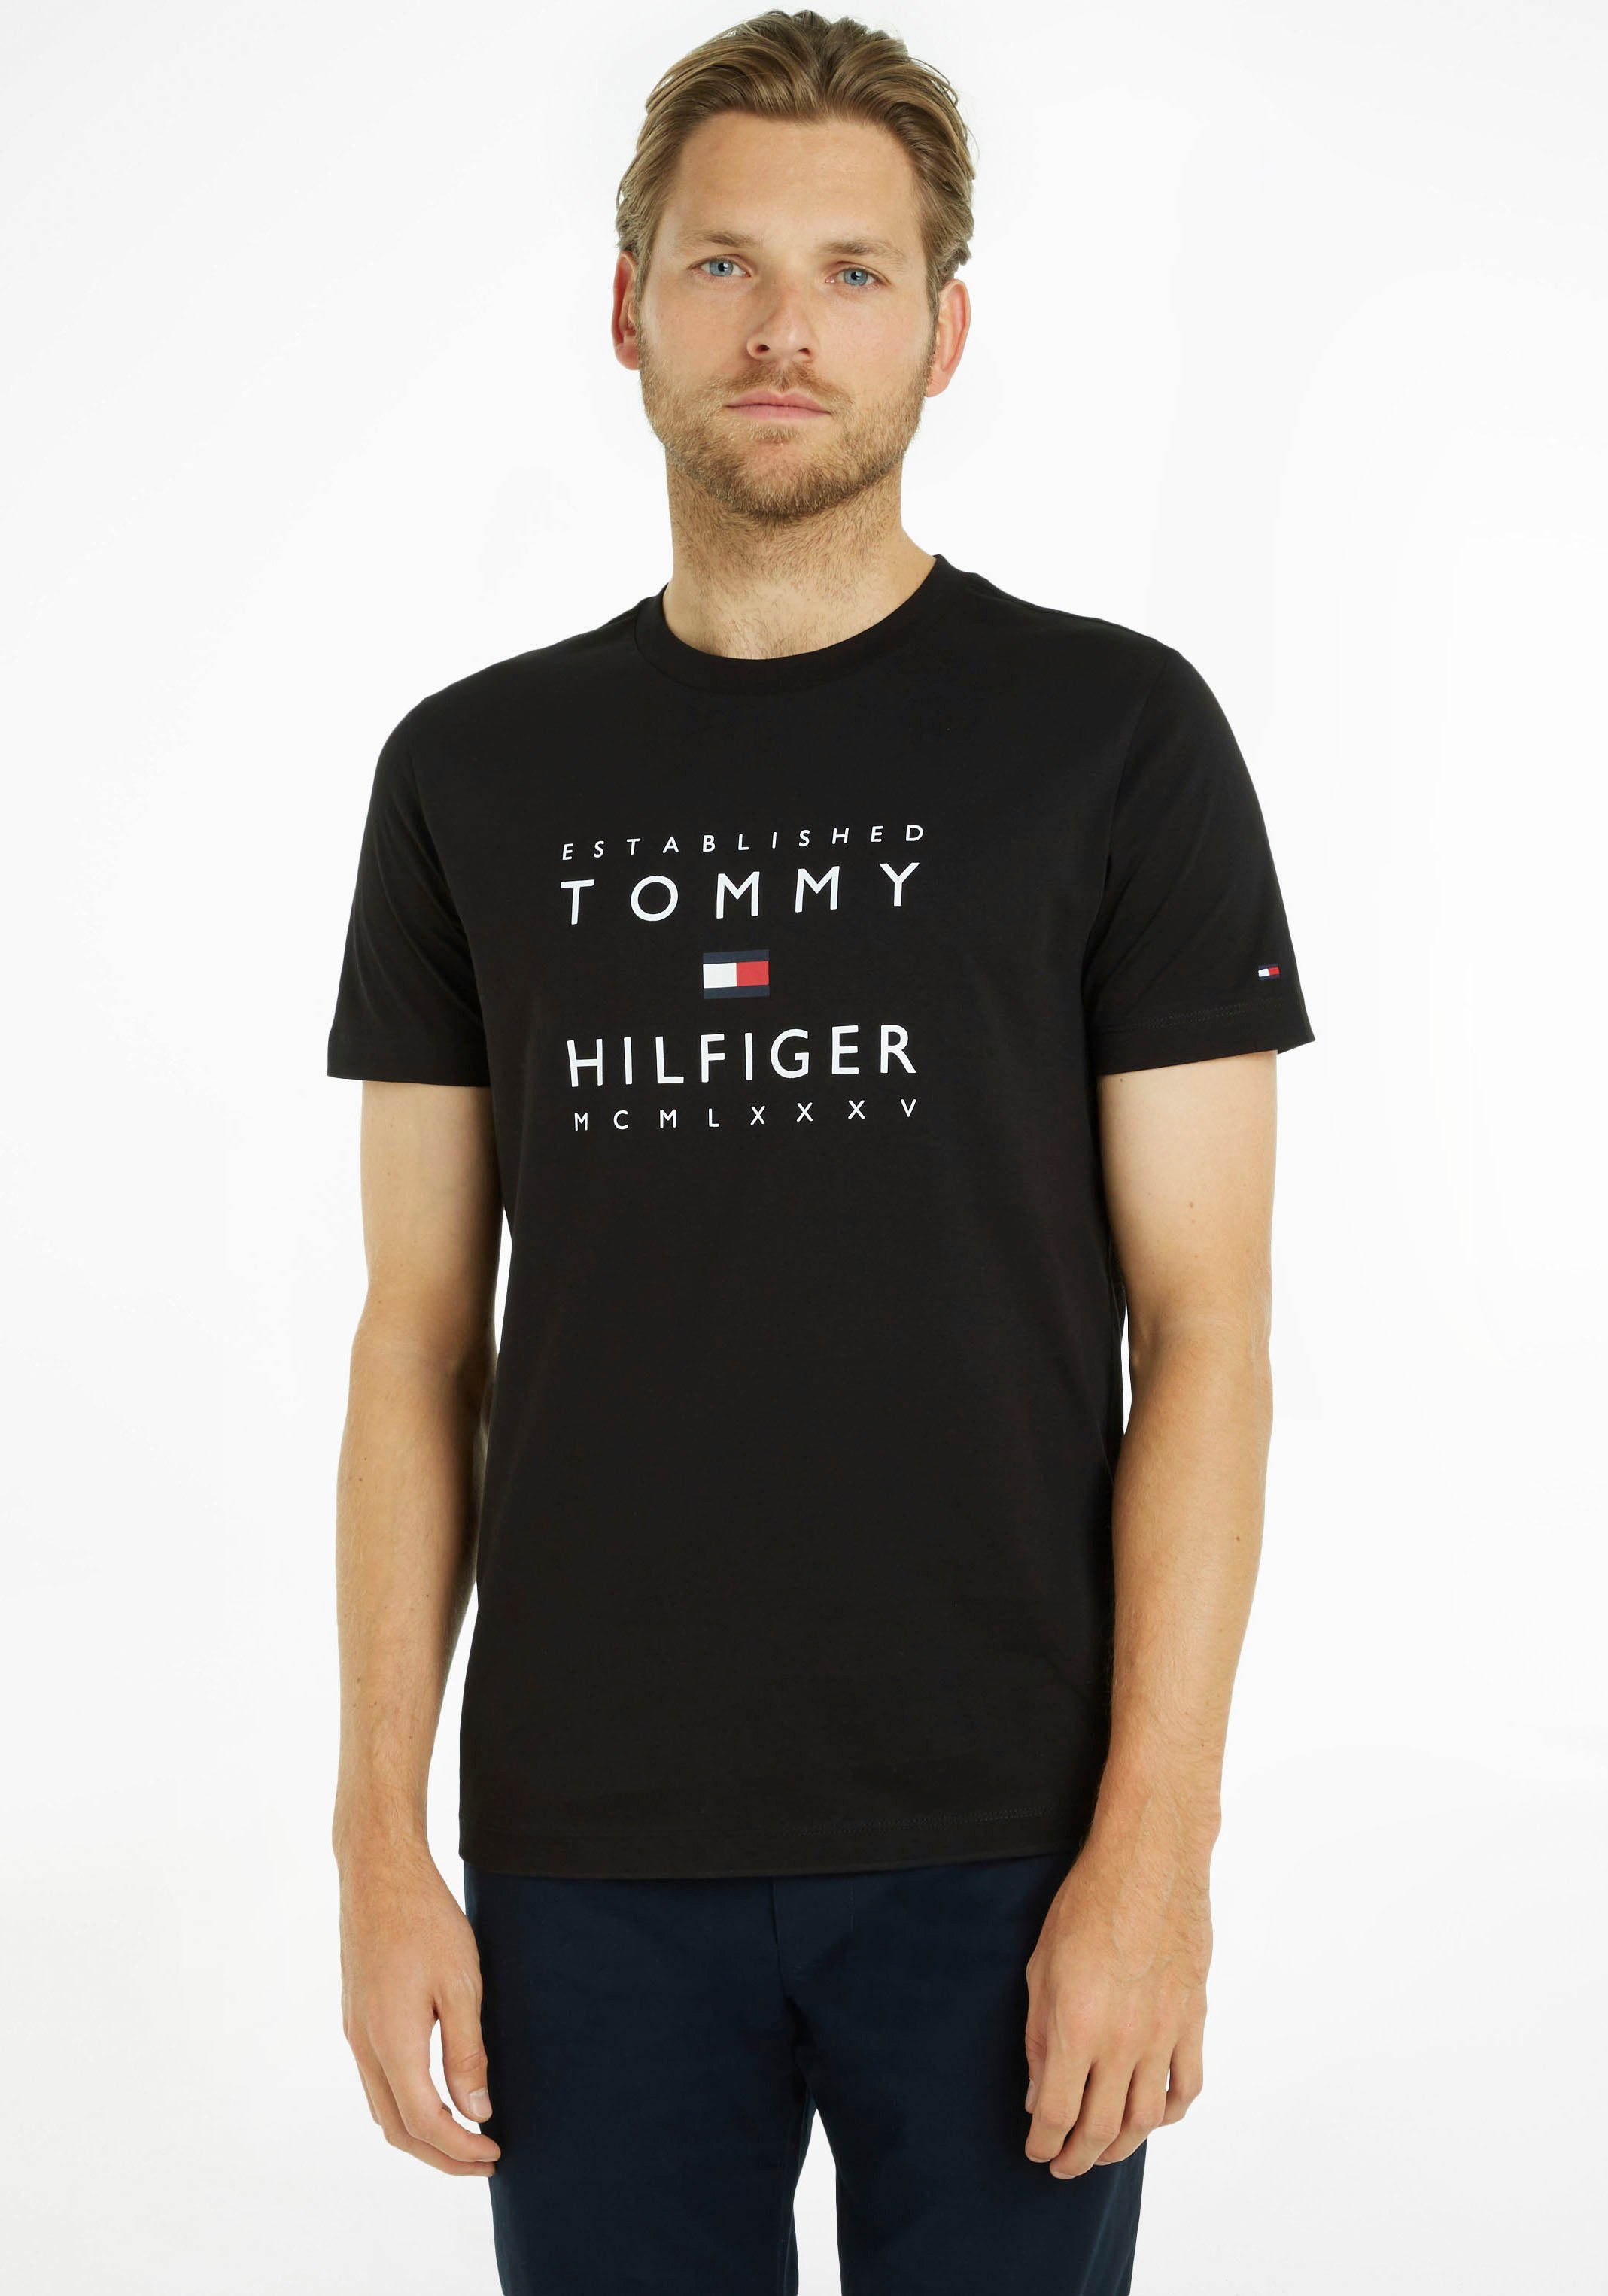 Tommy Hilfiger T-Shirt ESTABLISHED STACKED TEE mit Rippsband in Labelfarben am Ausschnitt Black